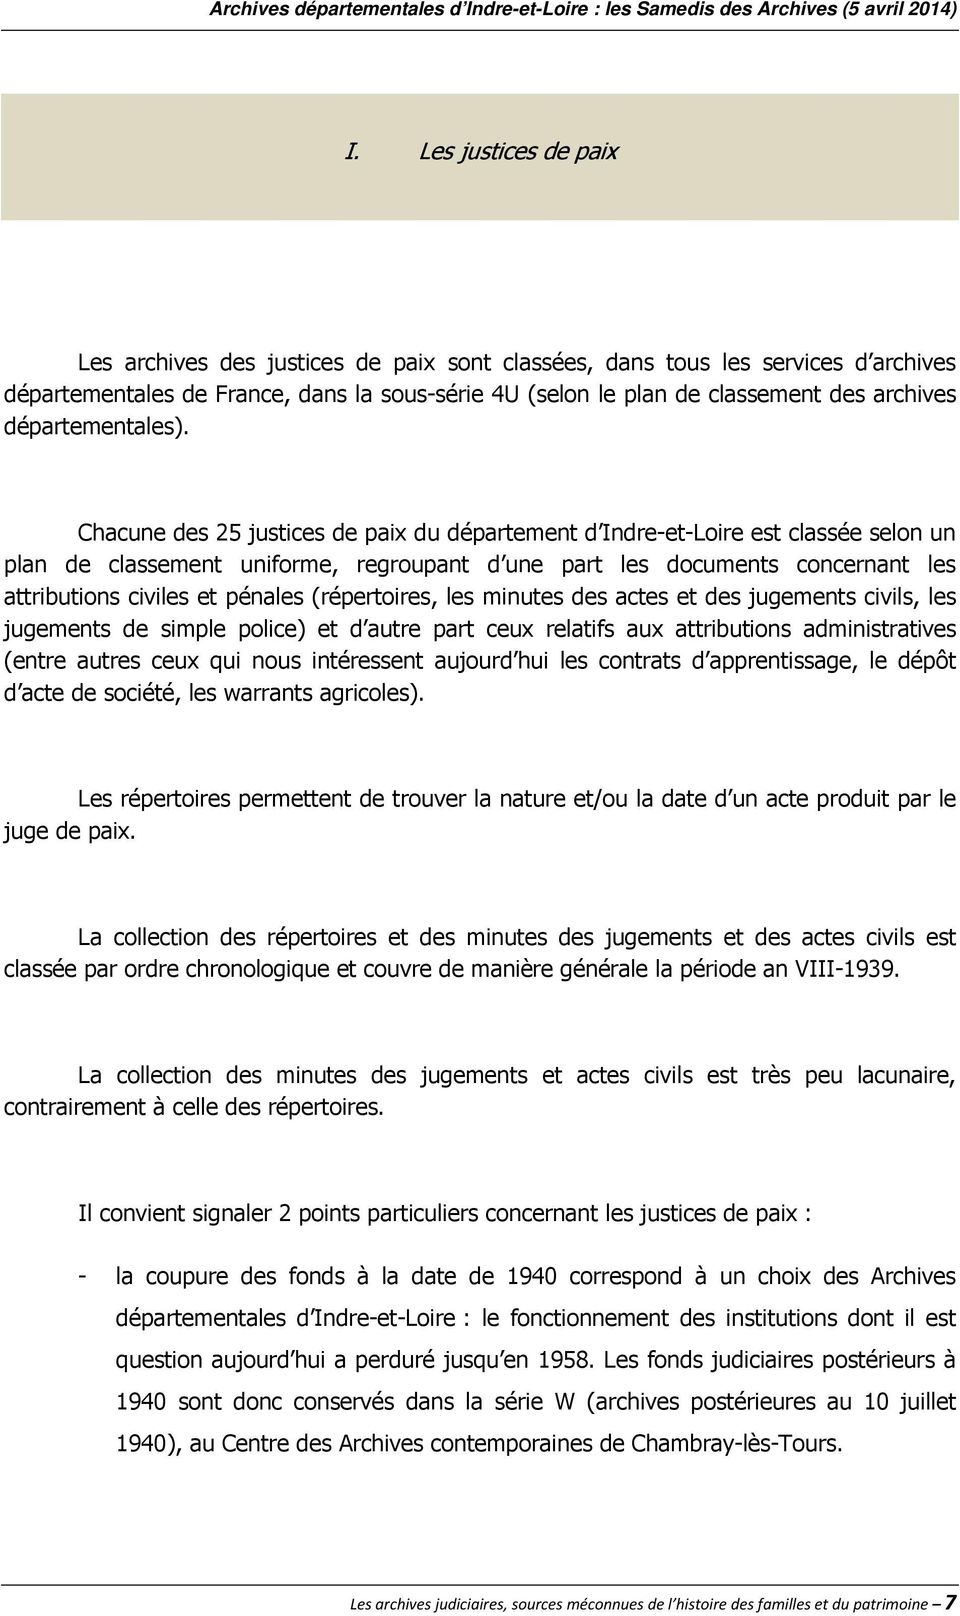 Chacune des 25 justices de paix du département d Indre-et-Loire est classée selon un plan de classement uniforme, regroupant d une part les documents concernant les attributions civiles et pénales